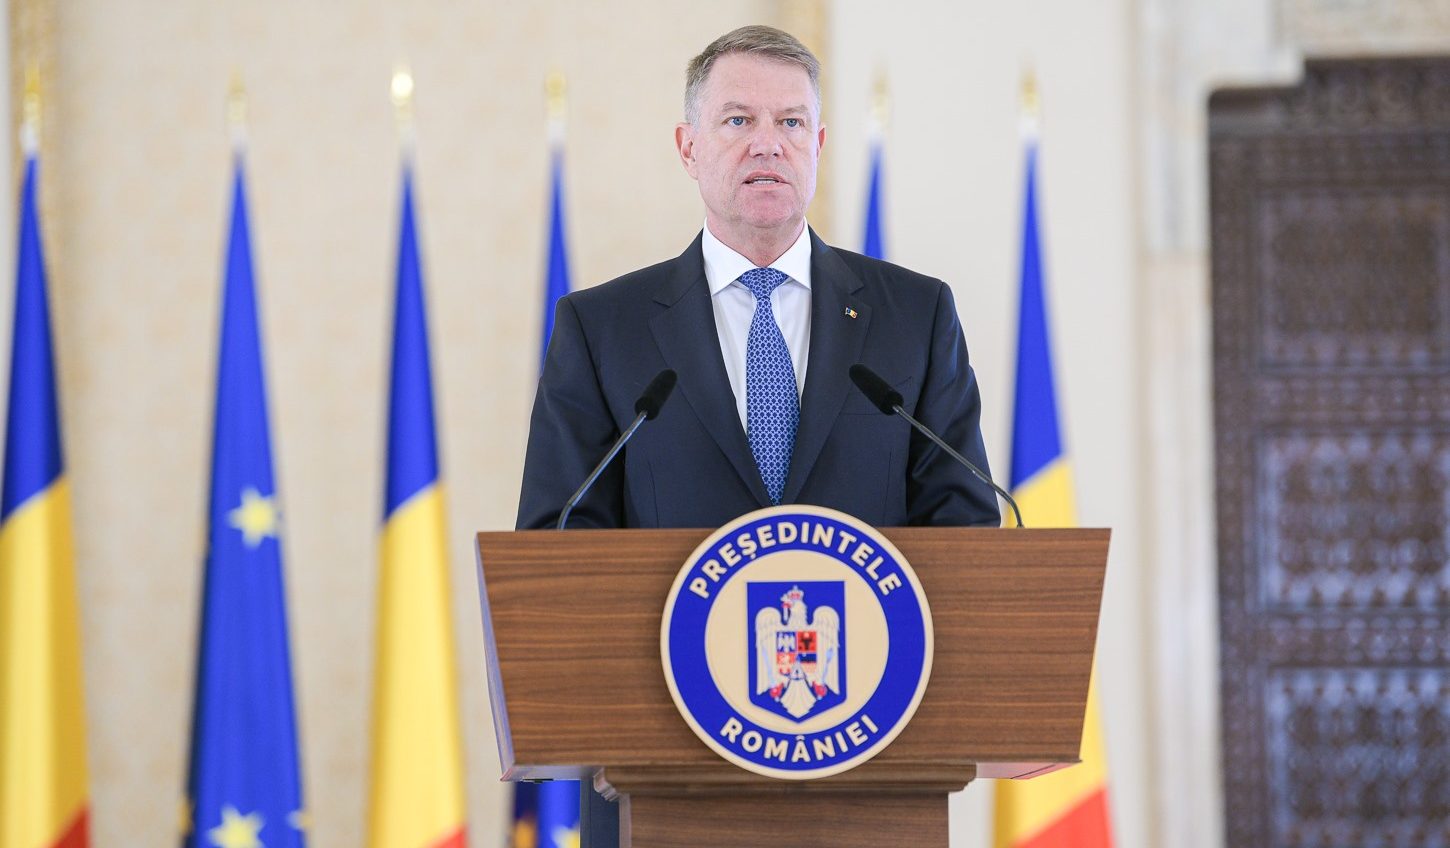 Iohannis: Diplomația română trebuie să se schimbe din cauza crizei provocate de pandemie